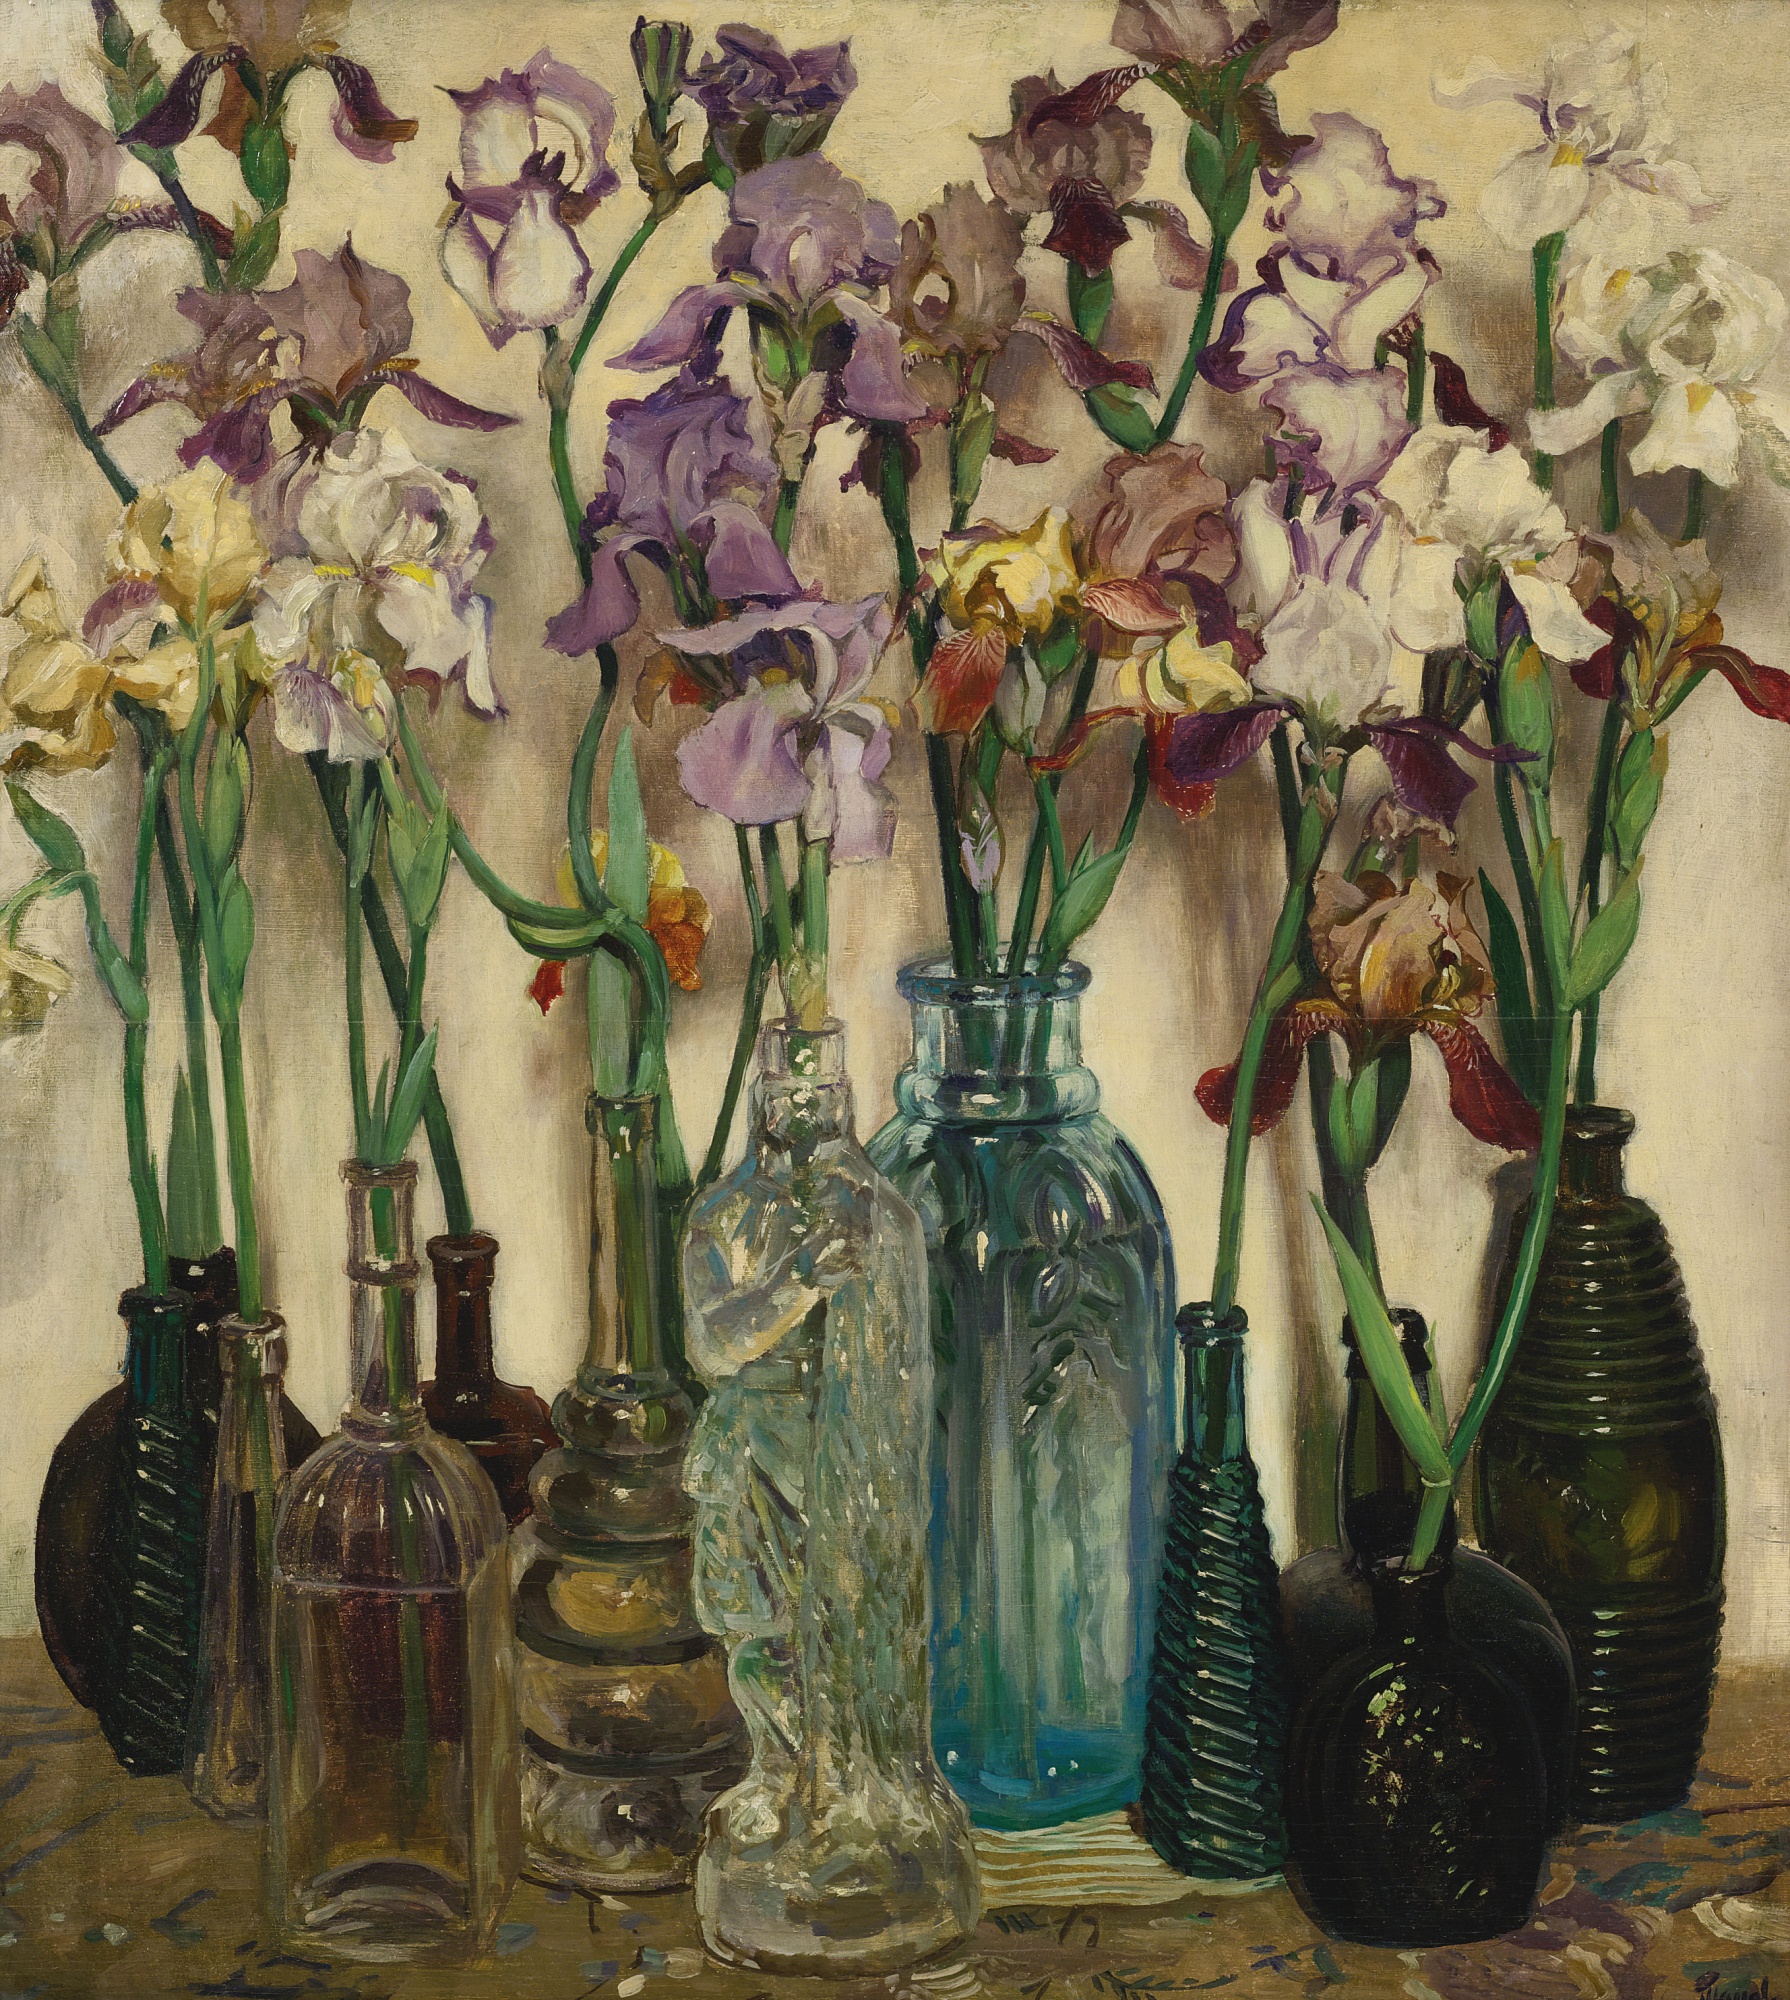 成排的朗姆酒瓶 by Frederick Judd Waugh - 1922 年 - 82.2 x 73.7 釐米 